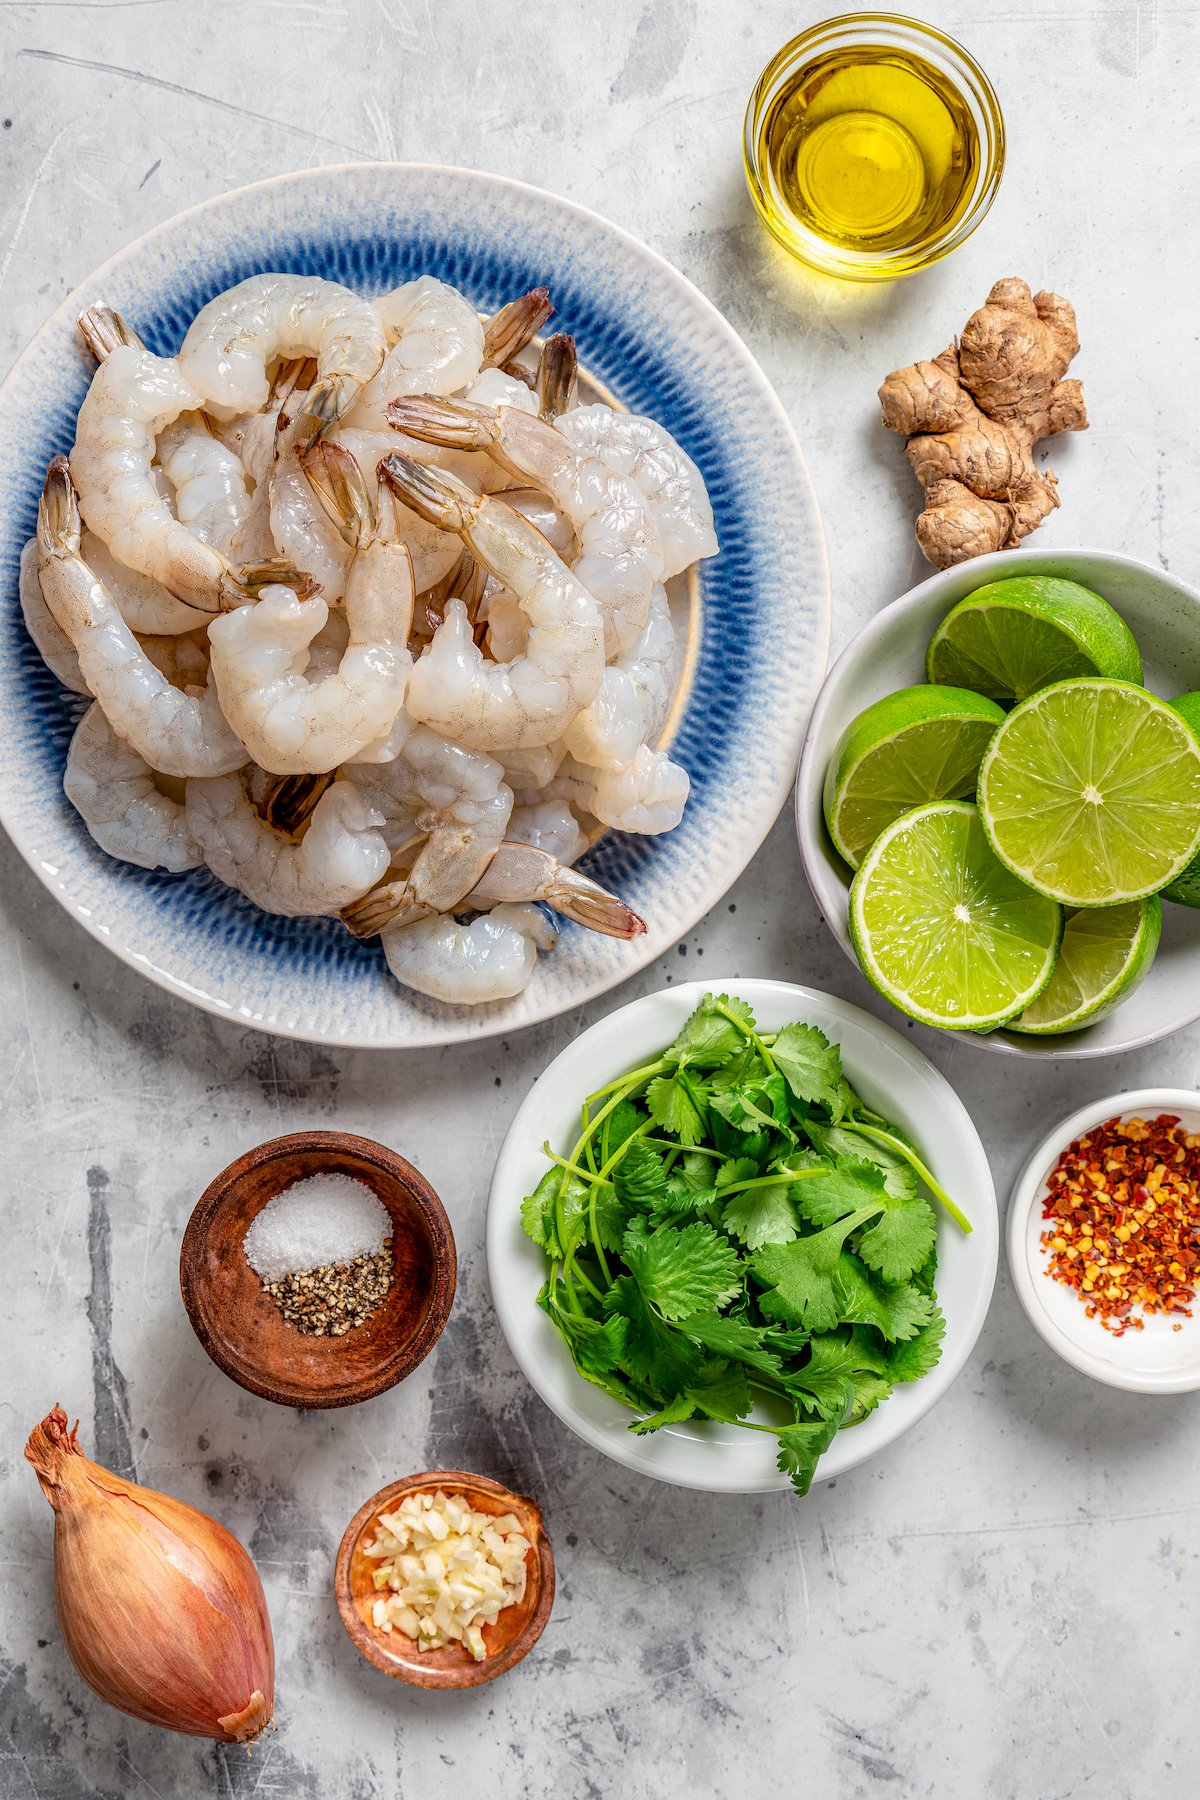 Ingredients for grilled shrimp.